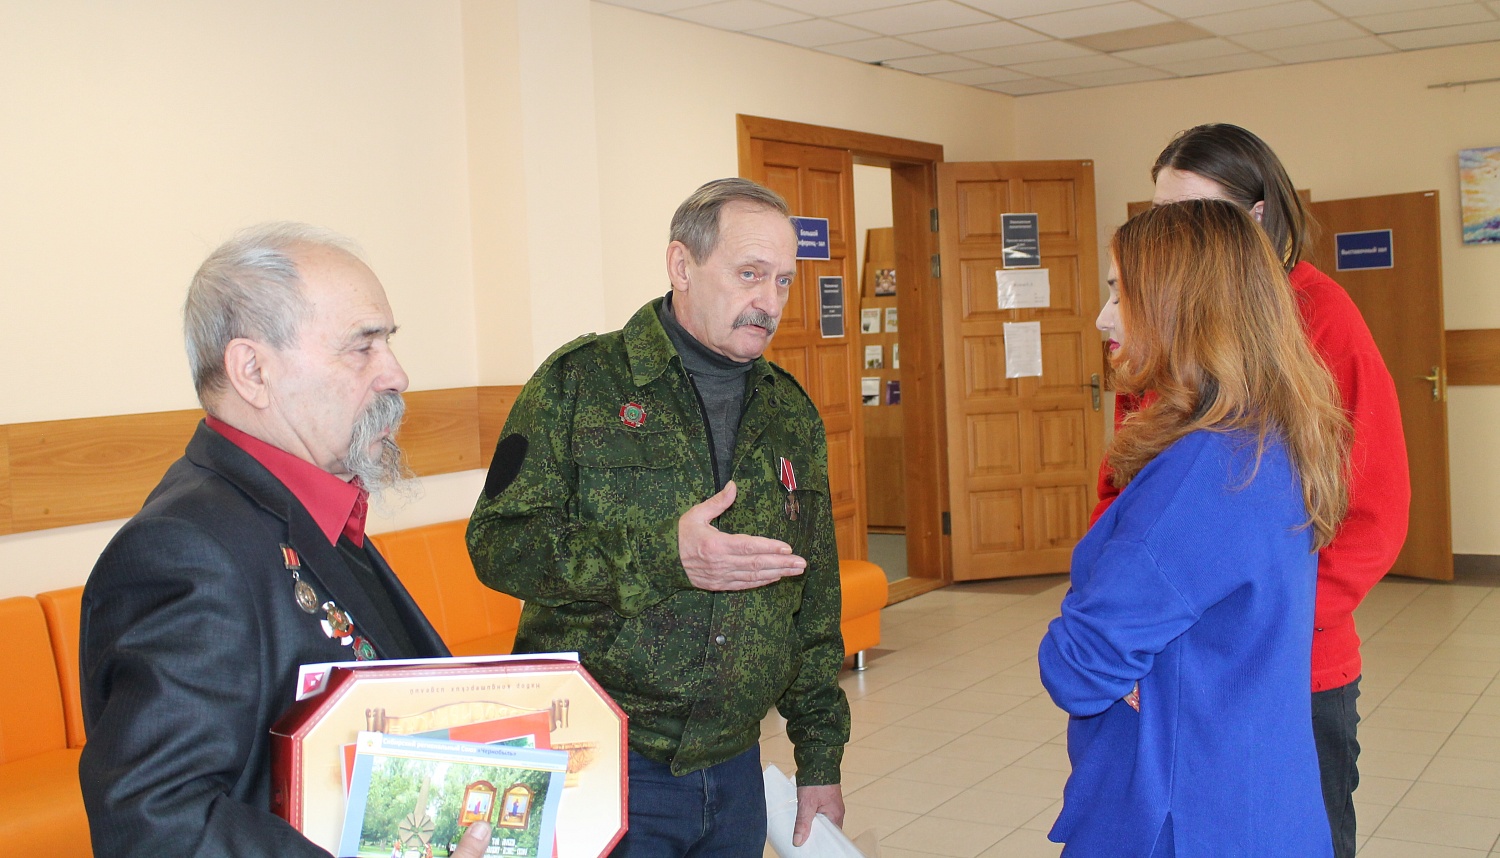 20 февраля для студентов ИСТ НГТУ состоялась встреча с представителями Сибирского регионального Союза «Чернобыль», приуроченная ко Дню защитника Отечества